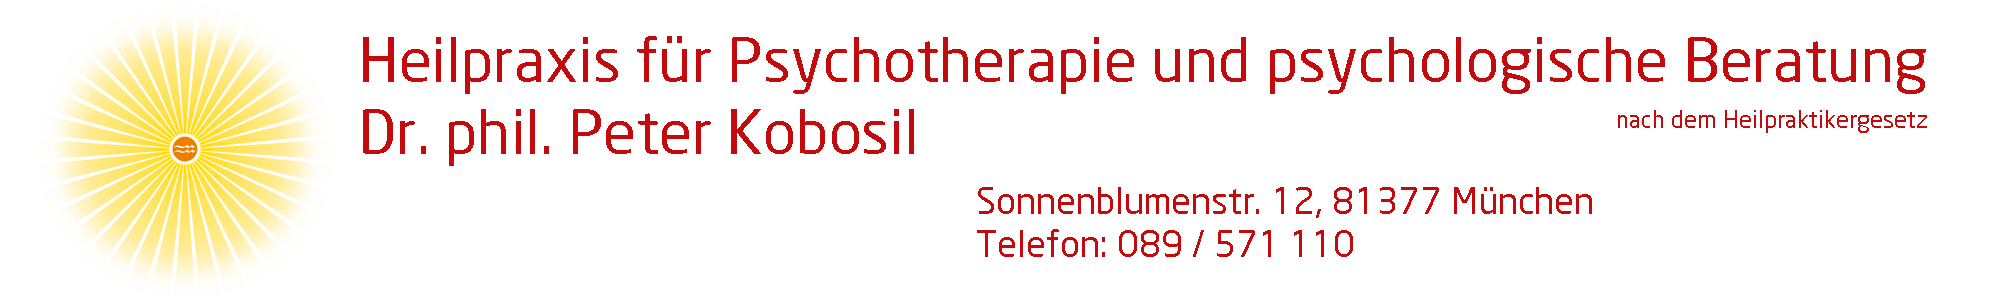 Psychotherapie Ganzheitlich Dr. phil. Kobosil in München